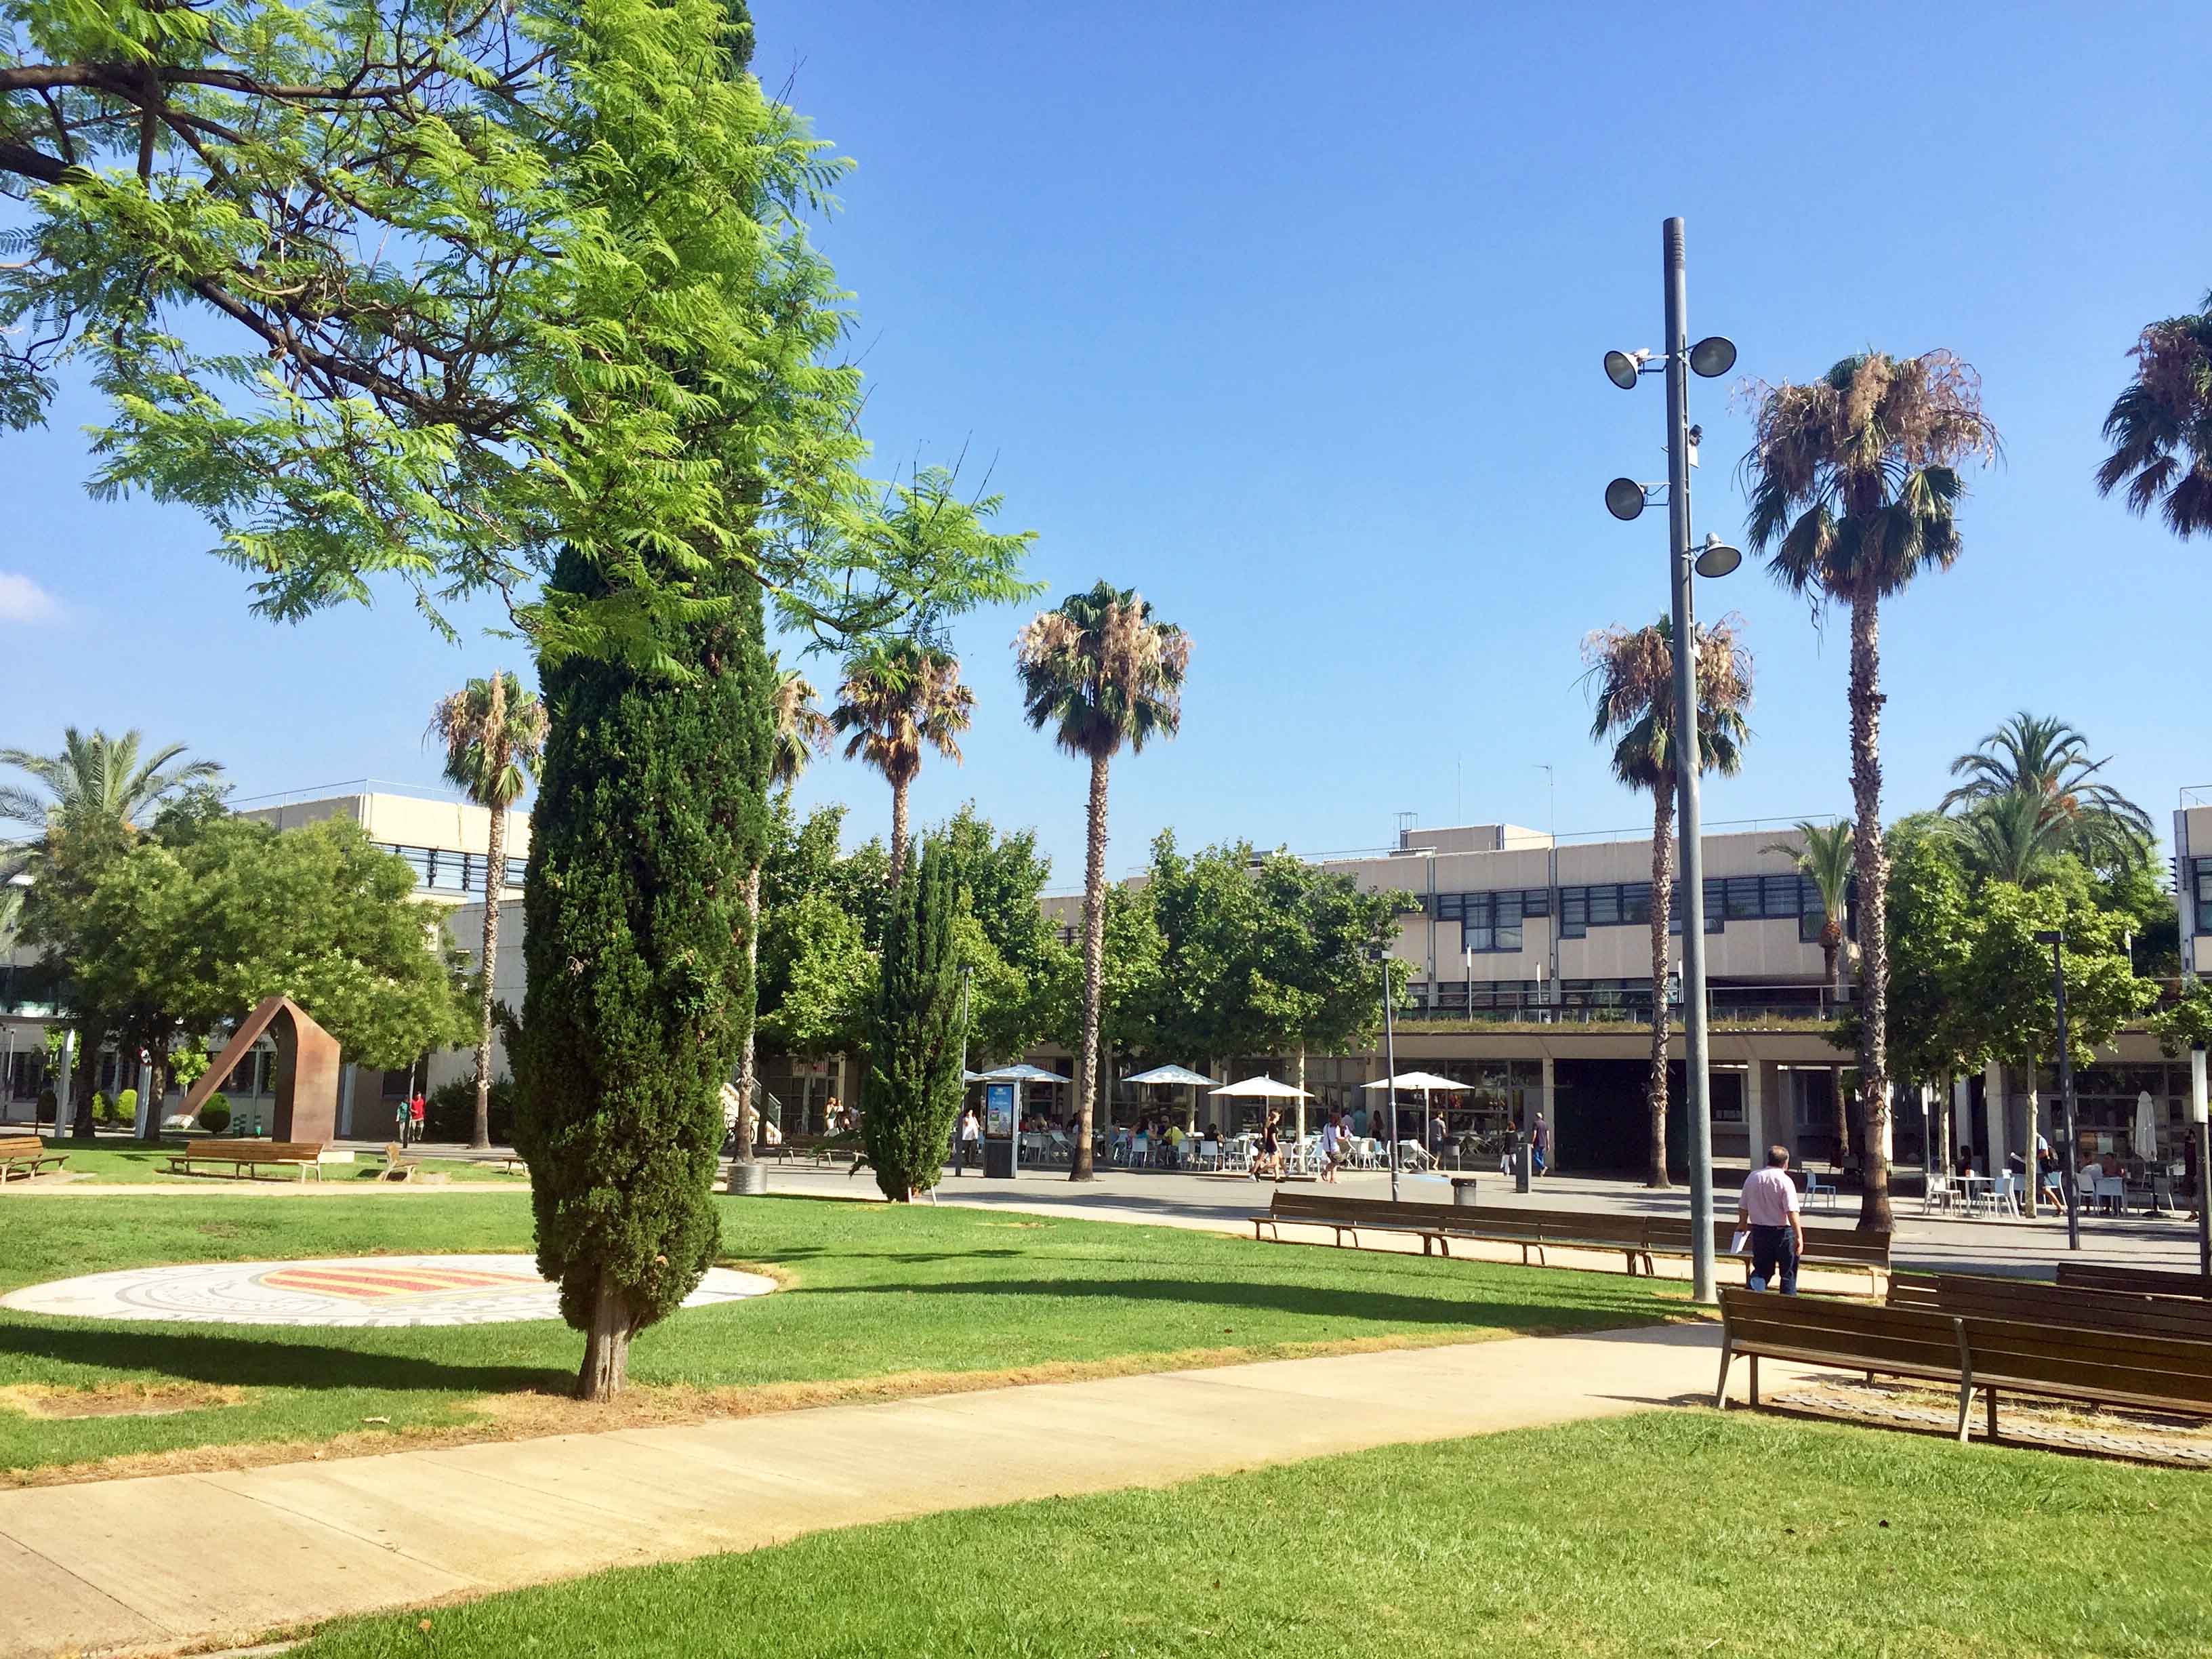 La Universidad Politècnica de València campus in Valencia, Spain.